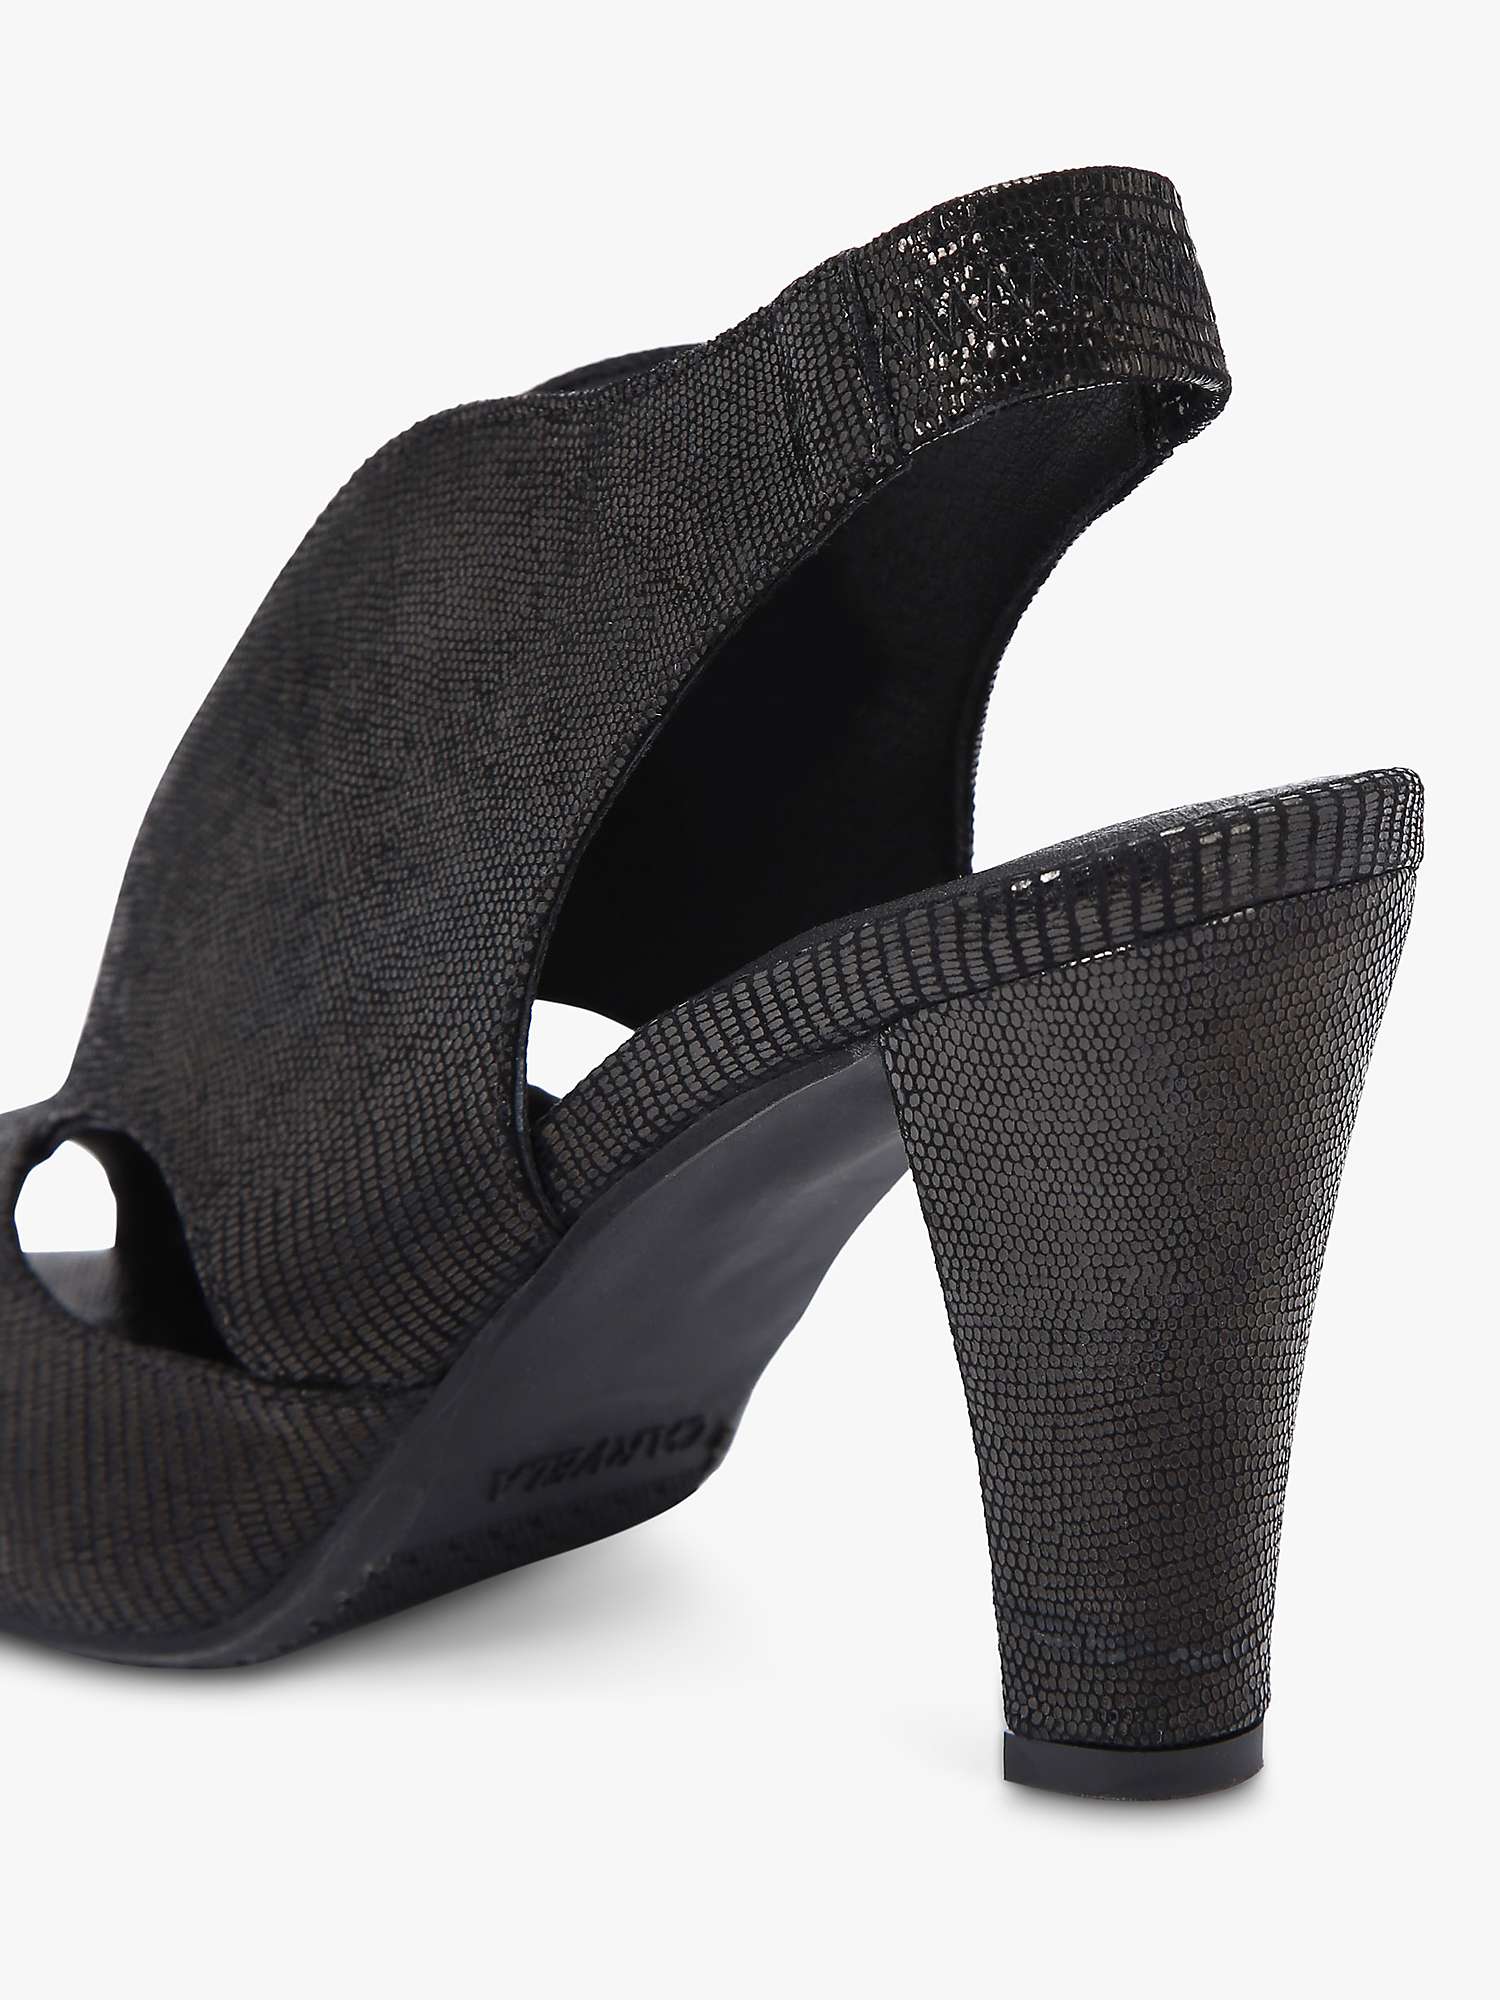 Buy Carvela Arabella Snakeskin Effect Leather Open Toe Court Shoes, Black Online at johnlewis.com